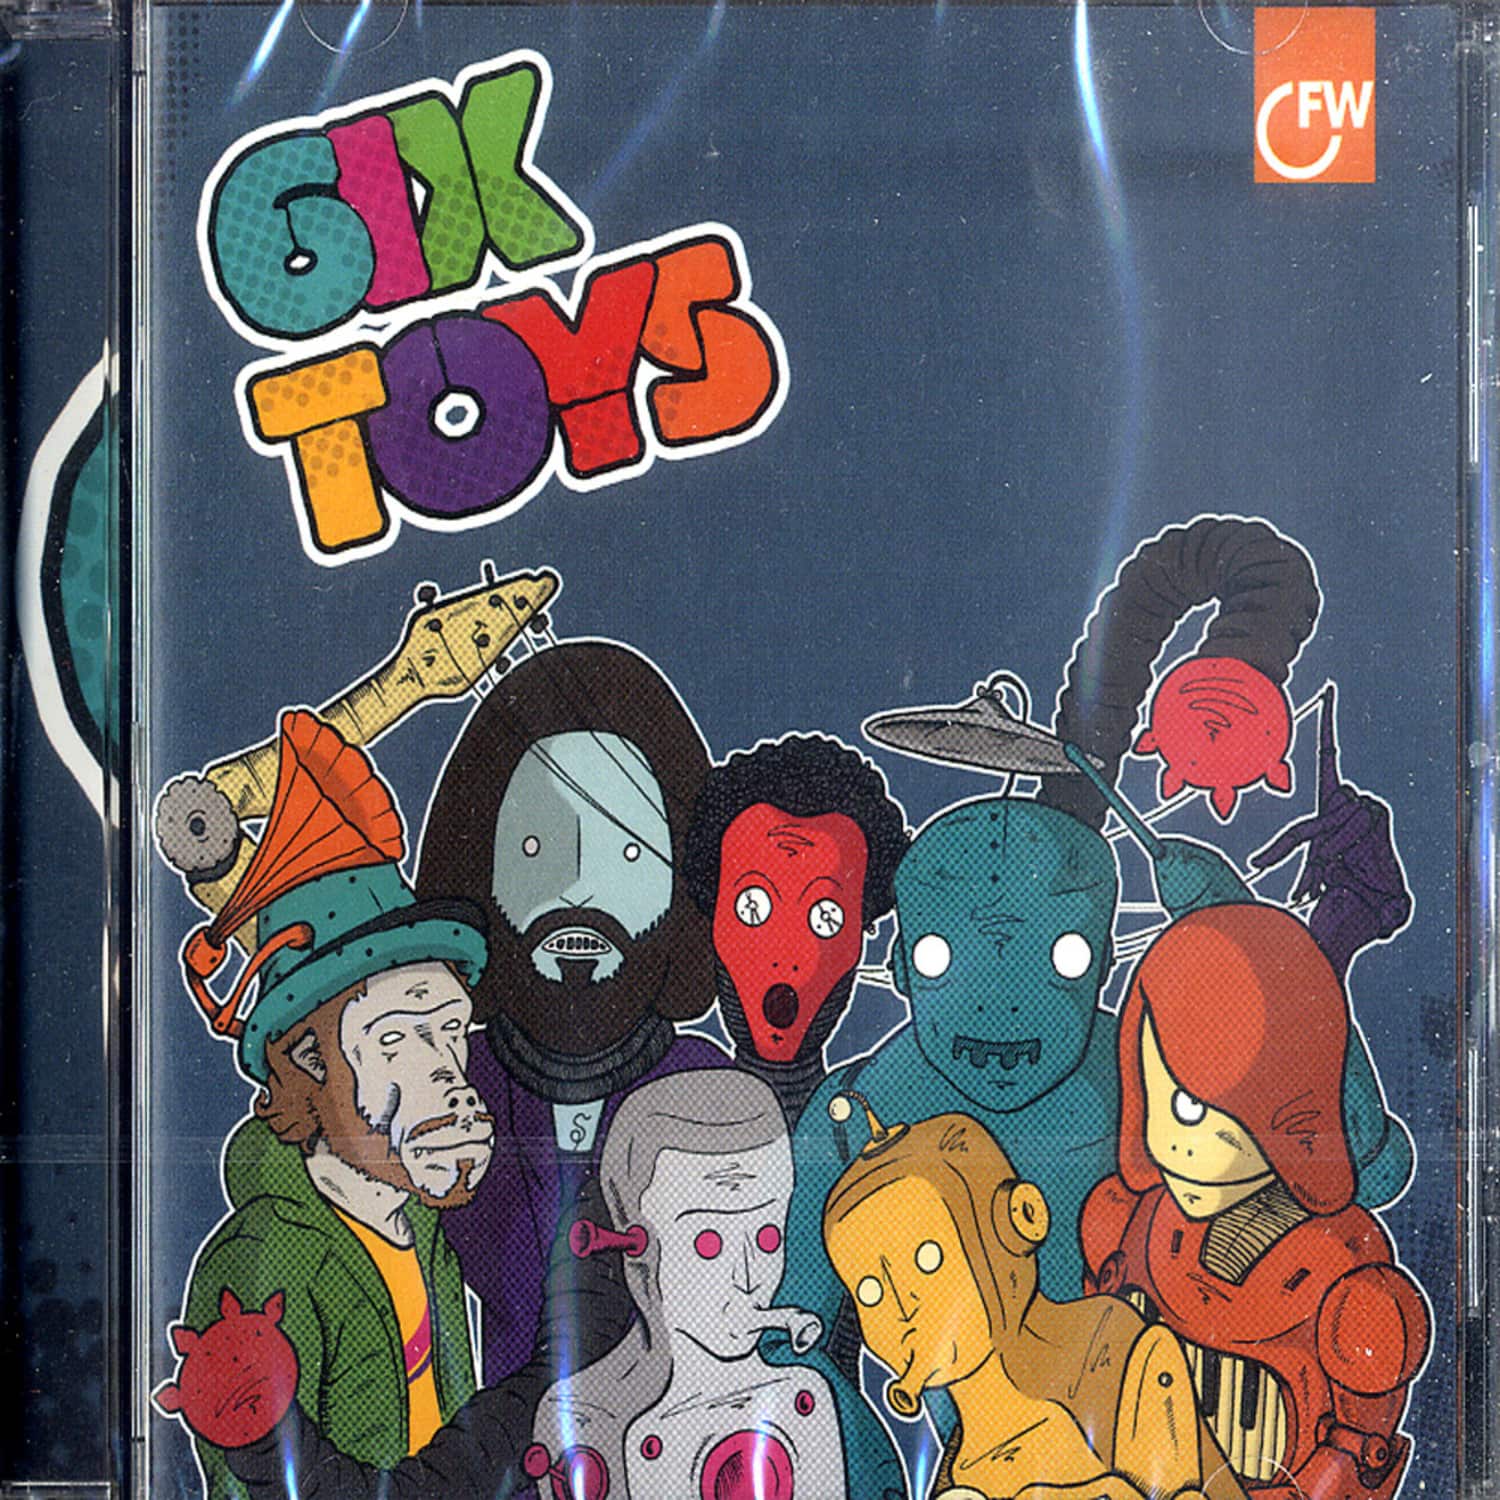 6ix Toys - 6IX TOYS 